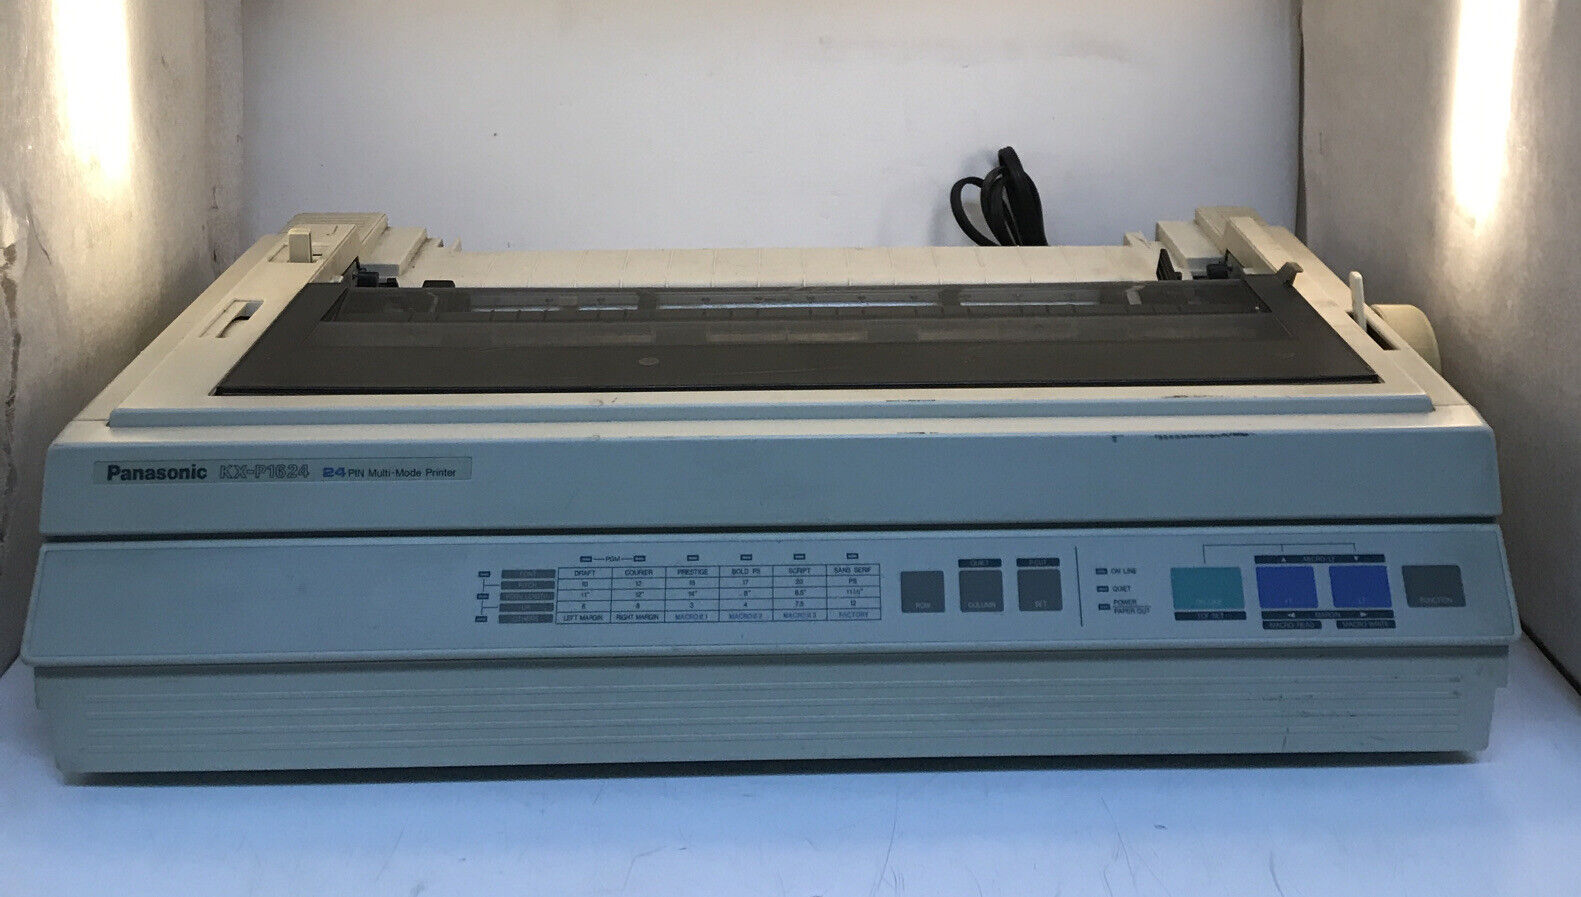 Vintage Panasonic KX-P1624 24 PIN Multi Mode Printer Powers On